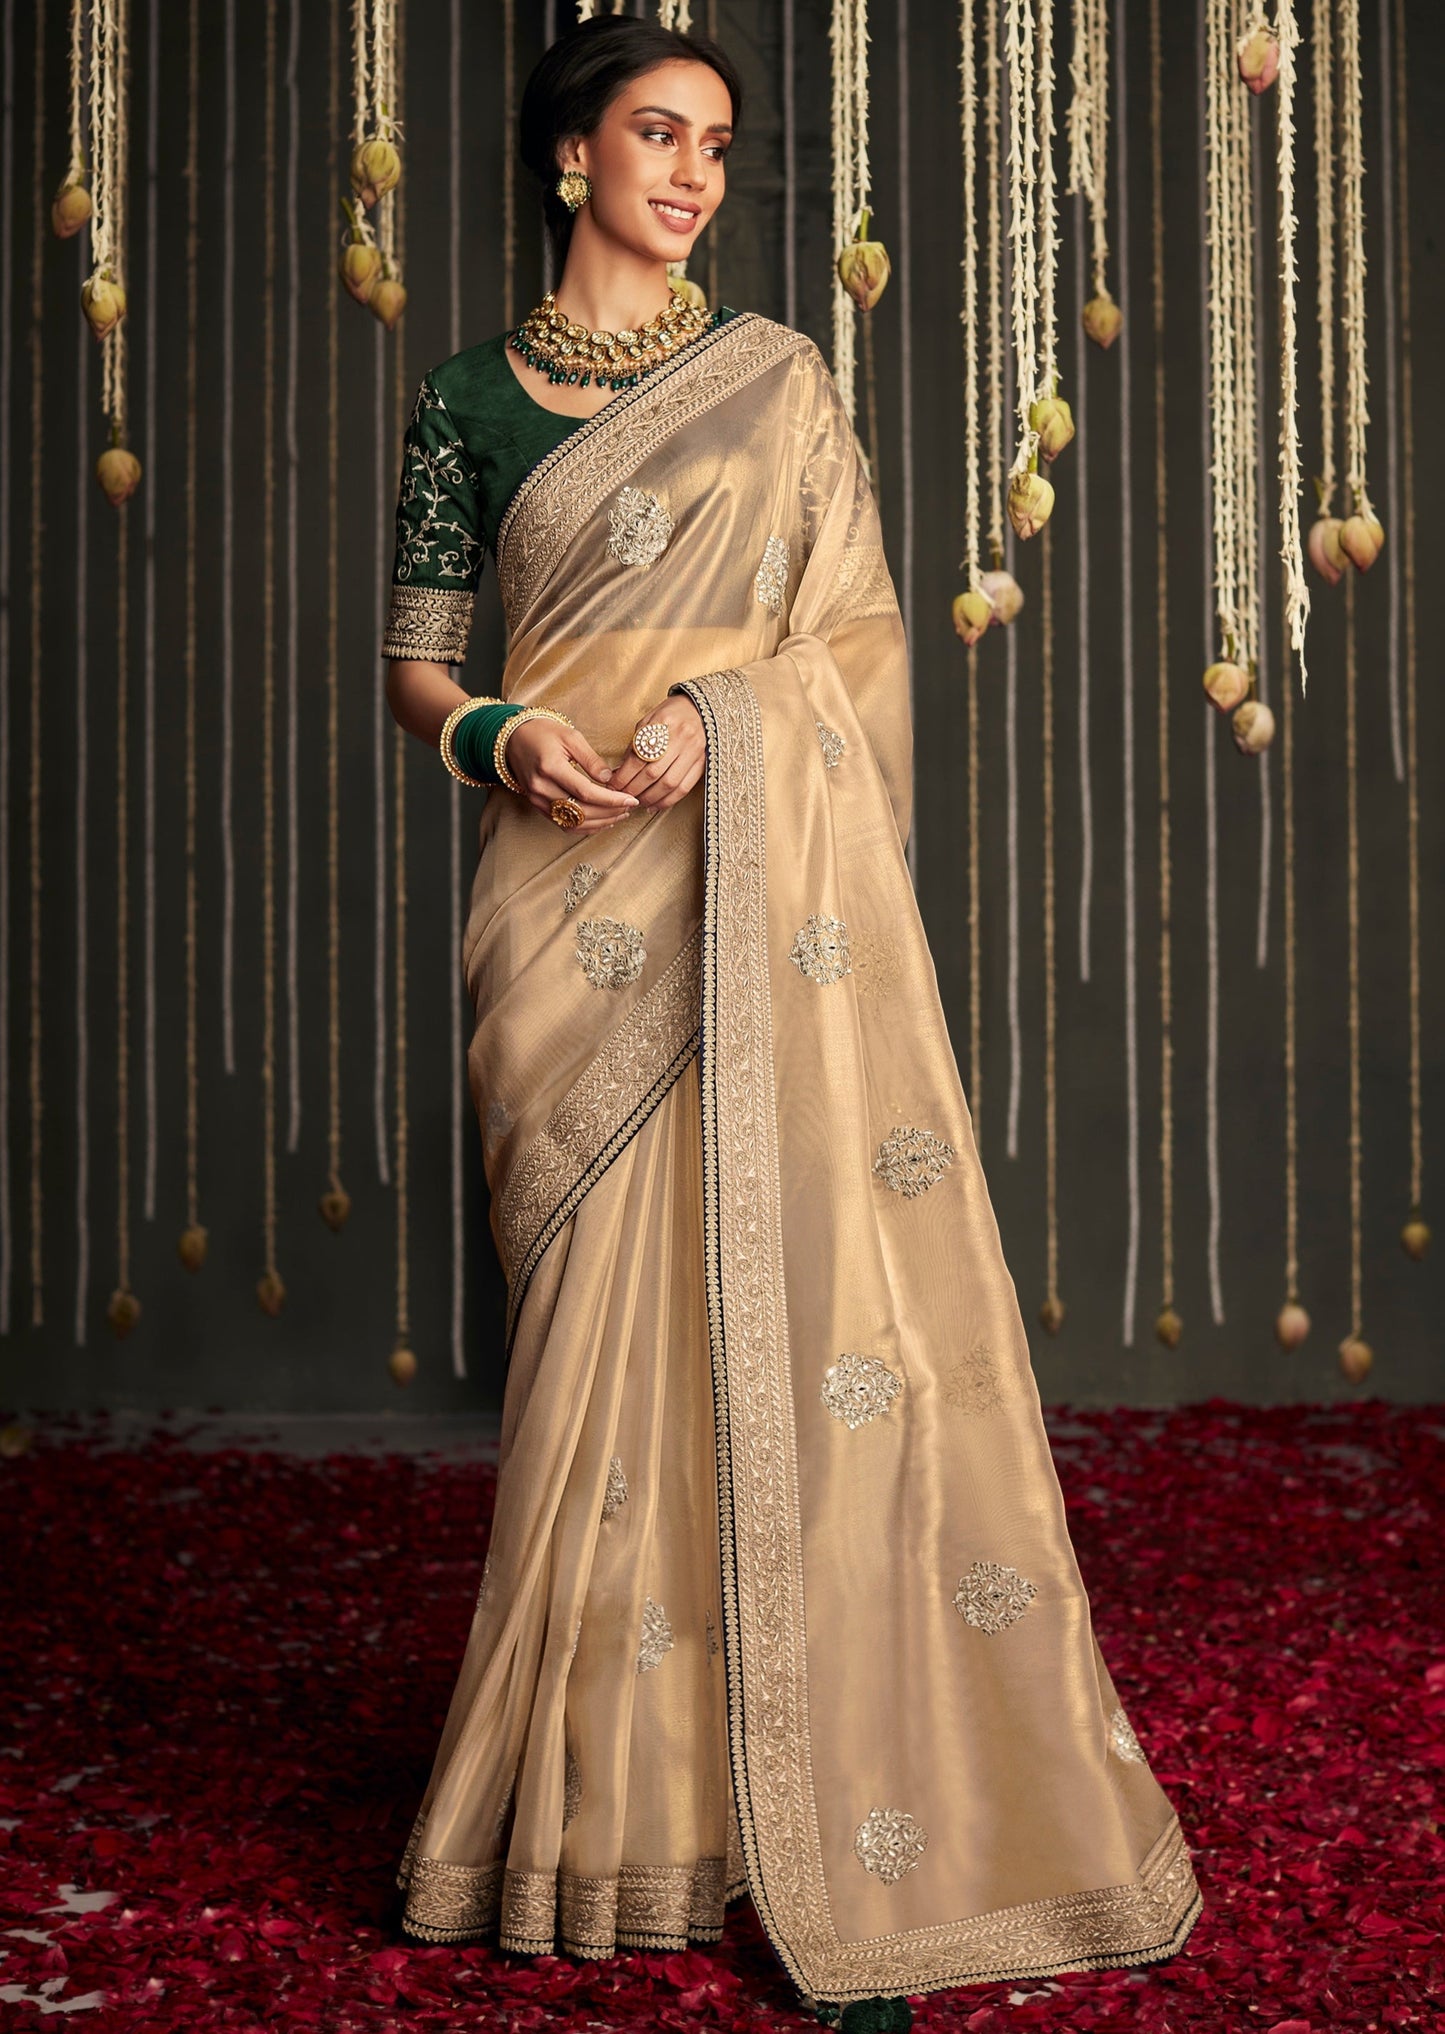 Designer organza tissue silk light gold embroidered saree online shopping price uk.